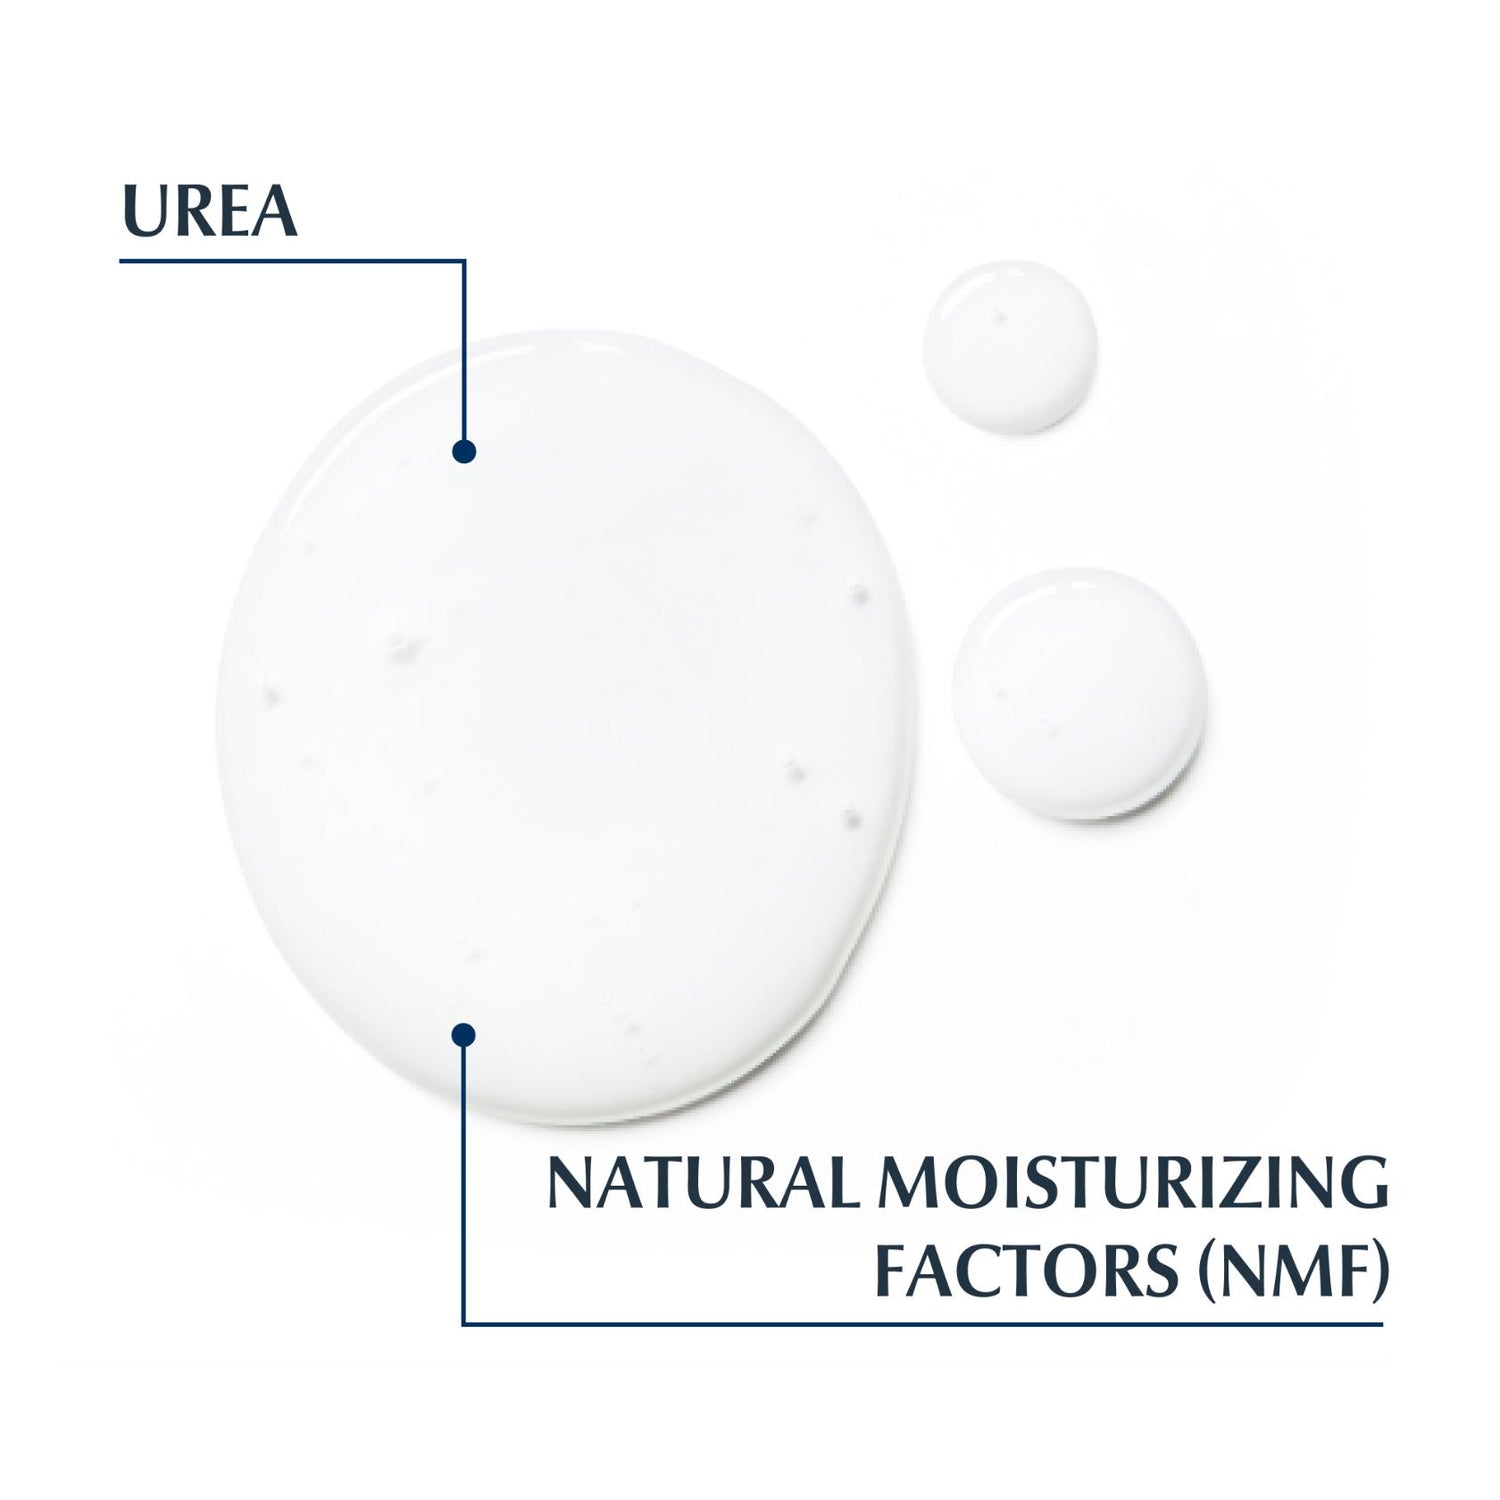 Eucerin UreaRepair Plus Body Wash 5% Urea 400ml